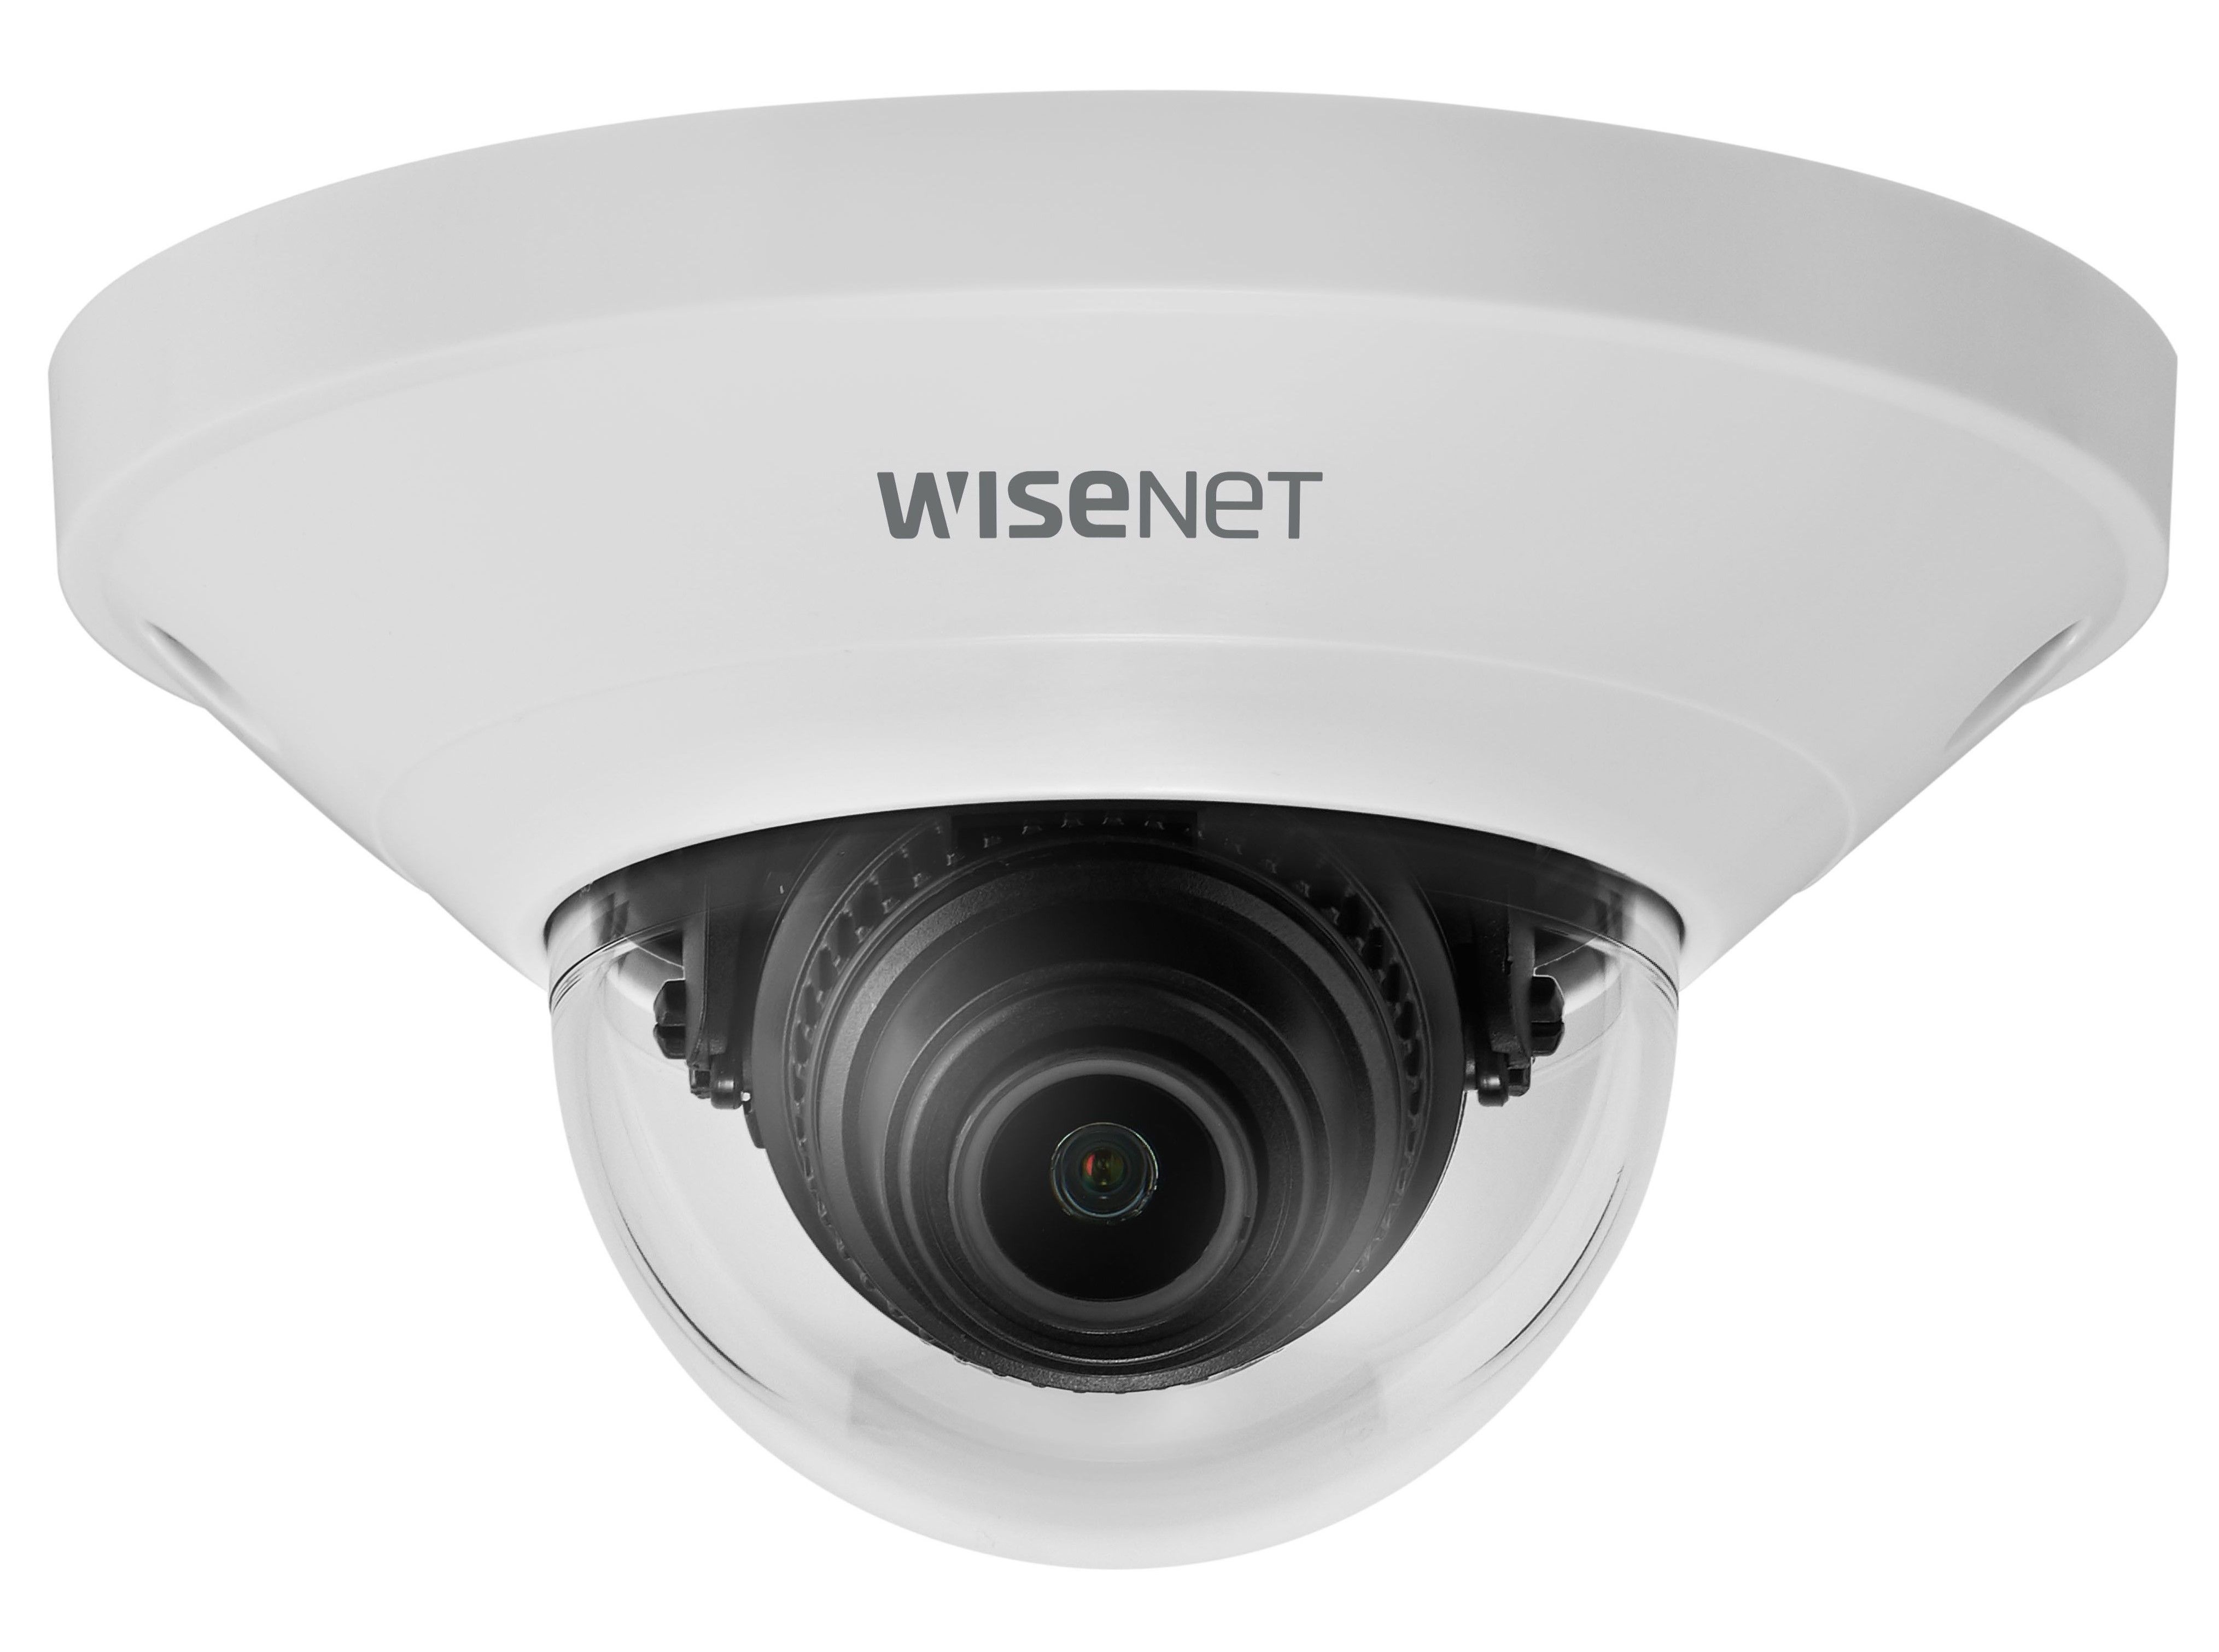 Wisenet QND-8011